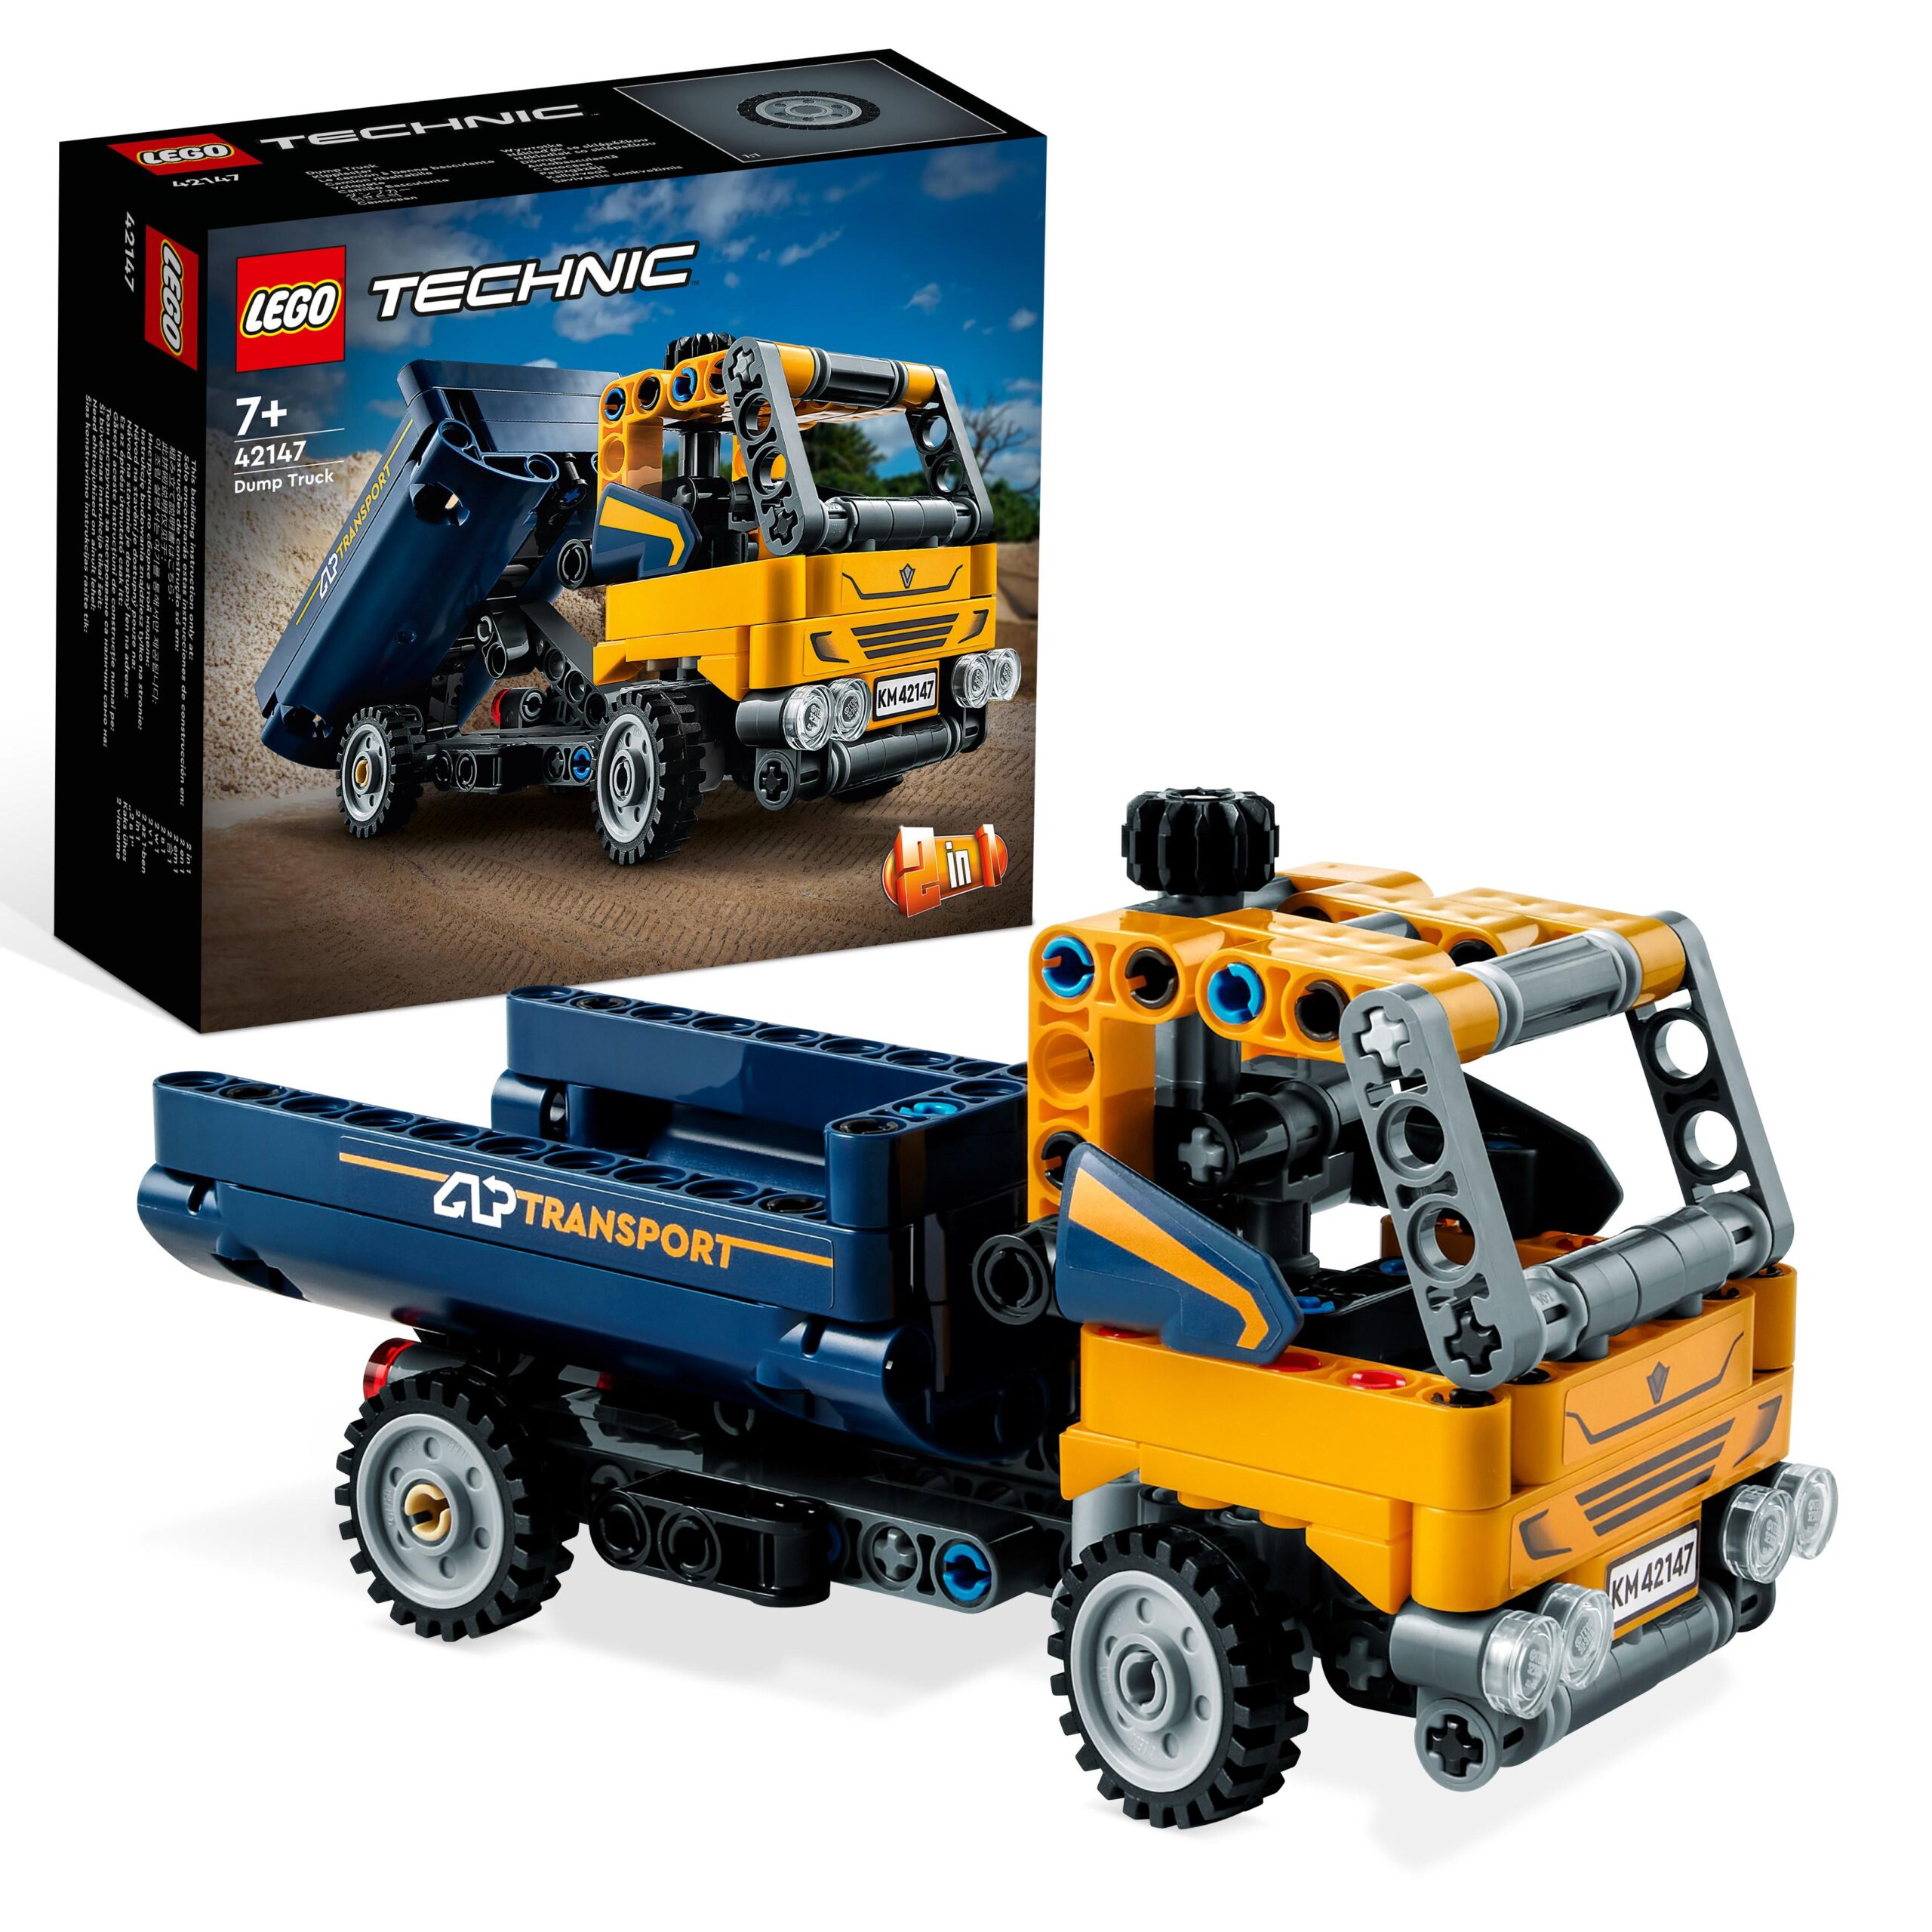 Lego technic 42147 camion ribaltabile, set 2 in 1 con camioncino ed escavatore giocattolo, giochi per bambini 7+, idee regalo - LEGO TECHNIC